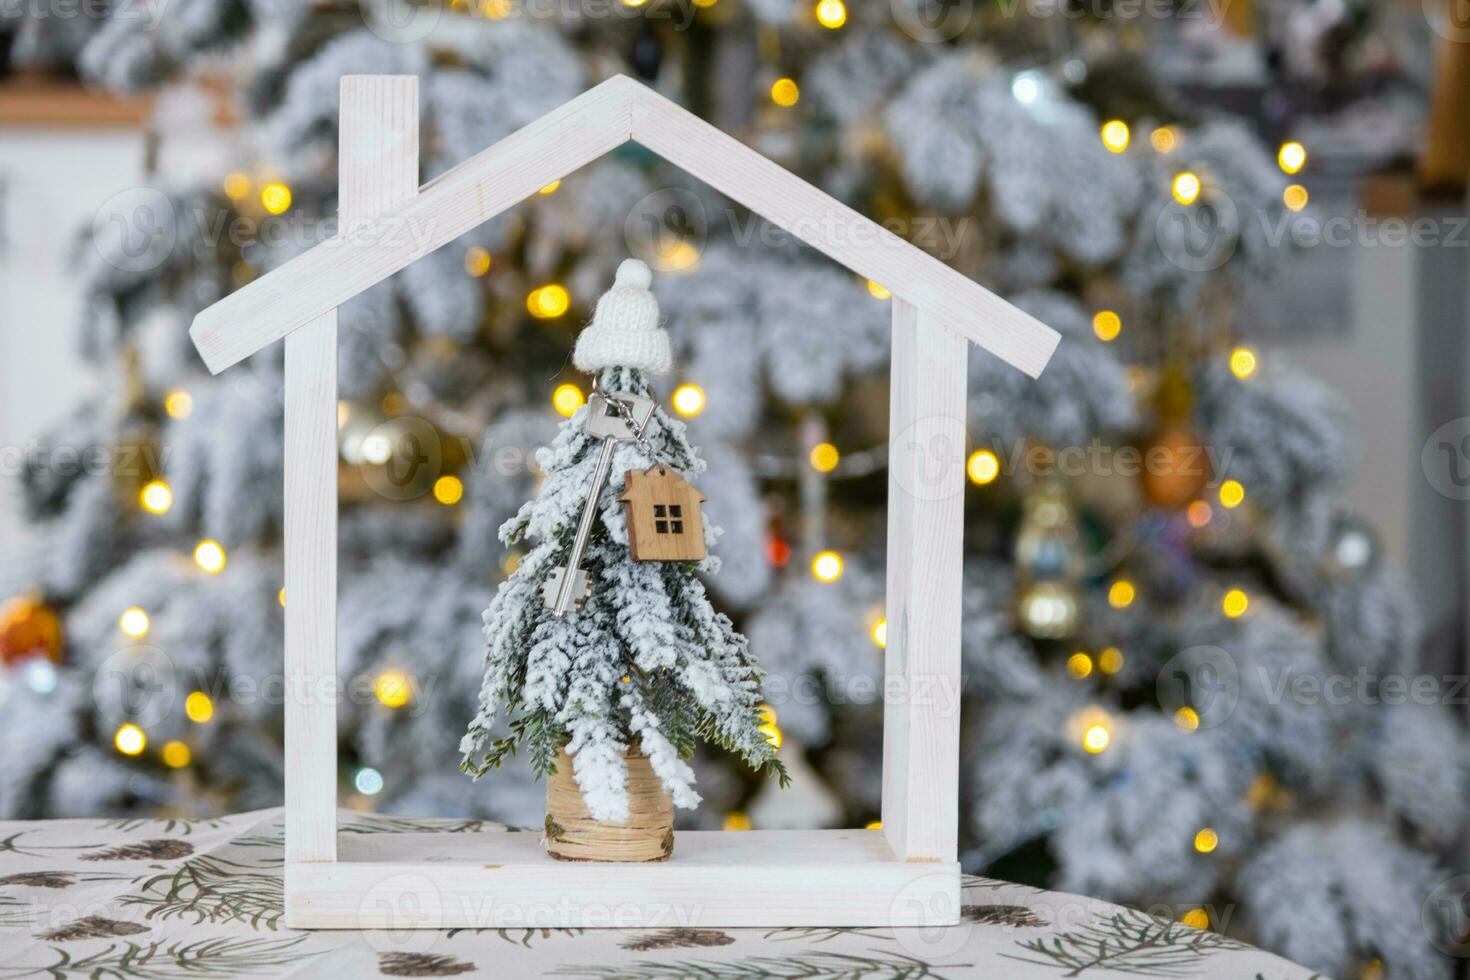 nyckel på jul träd och mycket liten hus på mysigt Hem med jul dekor på tabell av festlig vit kök. gåva för ny år. försäkring, rör på sig till ny hus, inteckning, hyra och verklig egendom foto